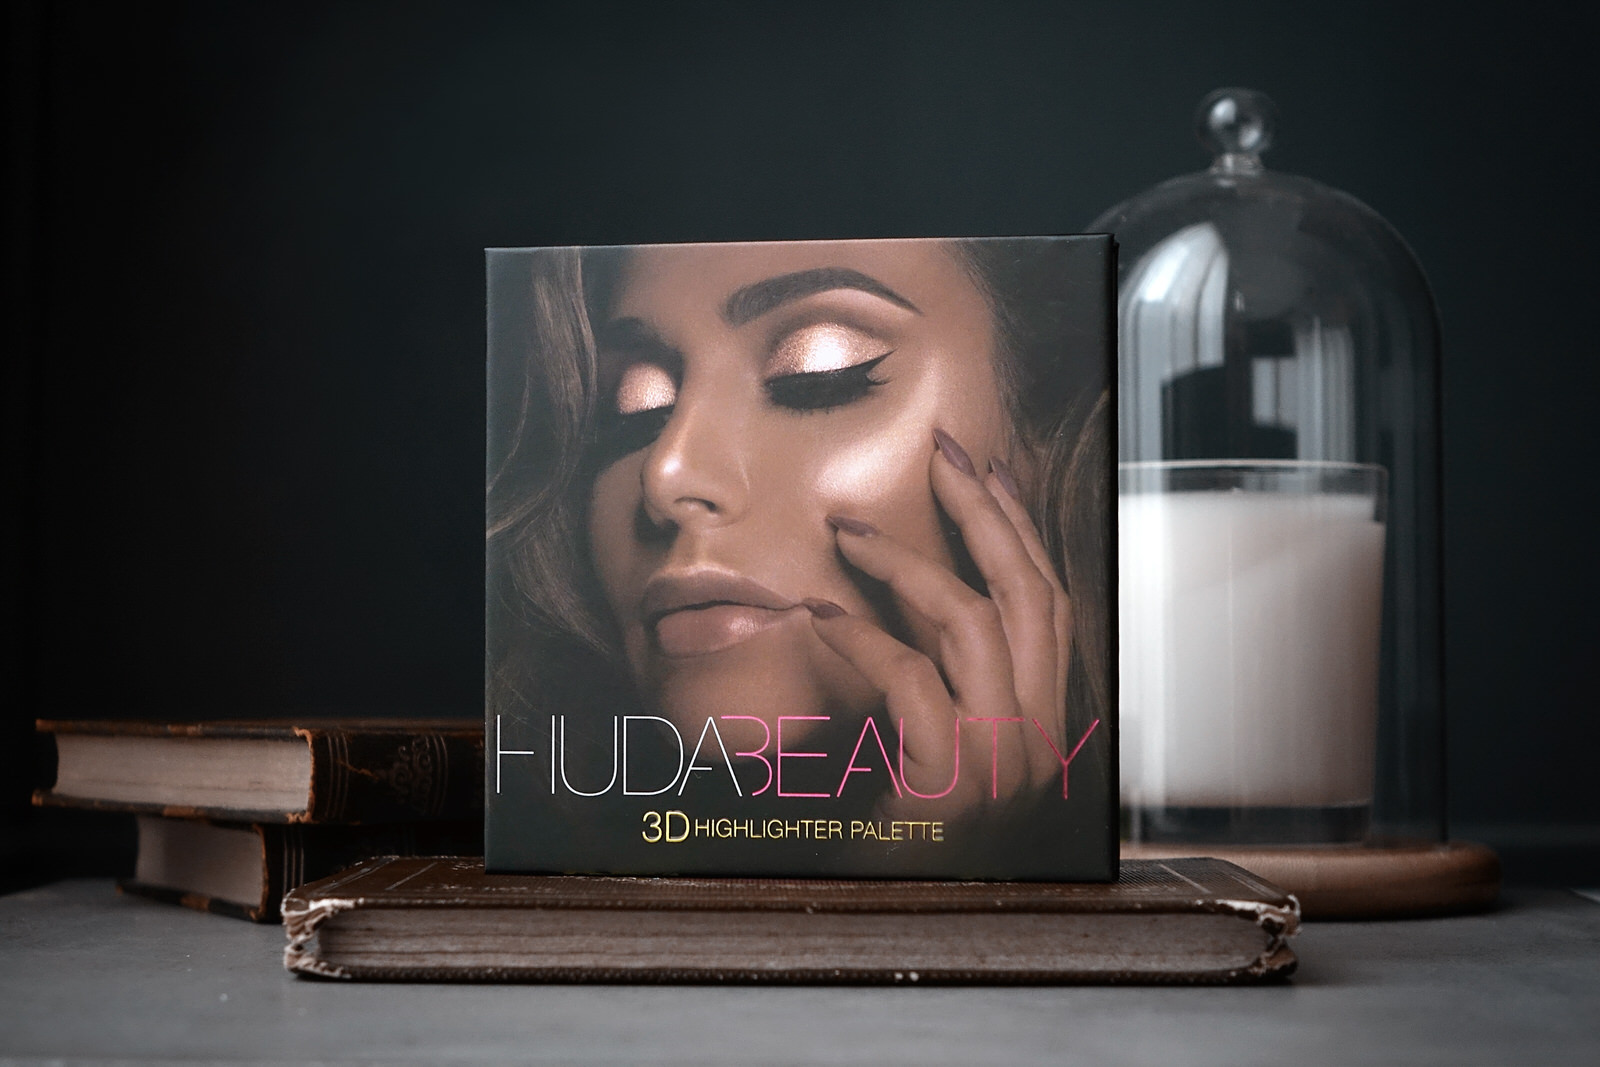 La plette 3D highlighter par Huda Beauty